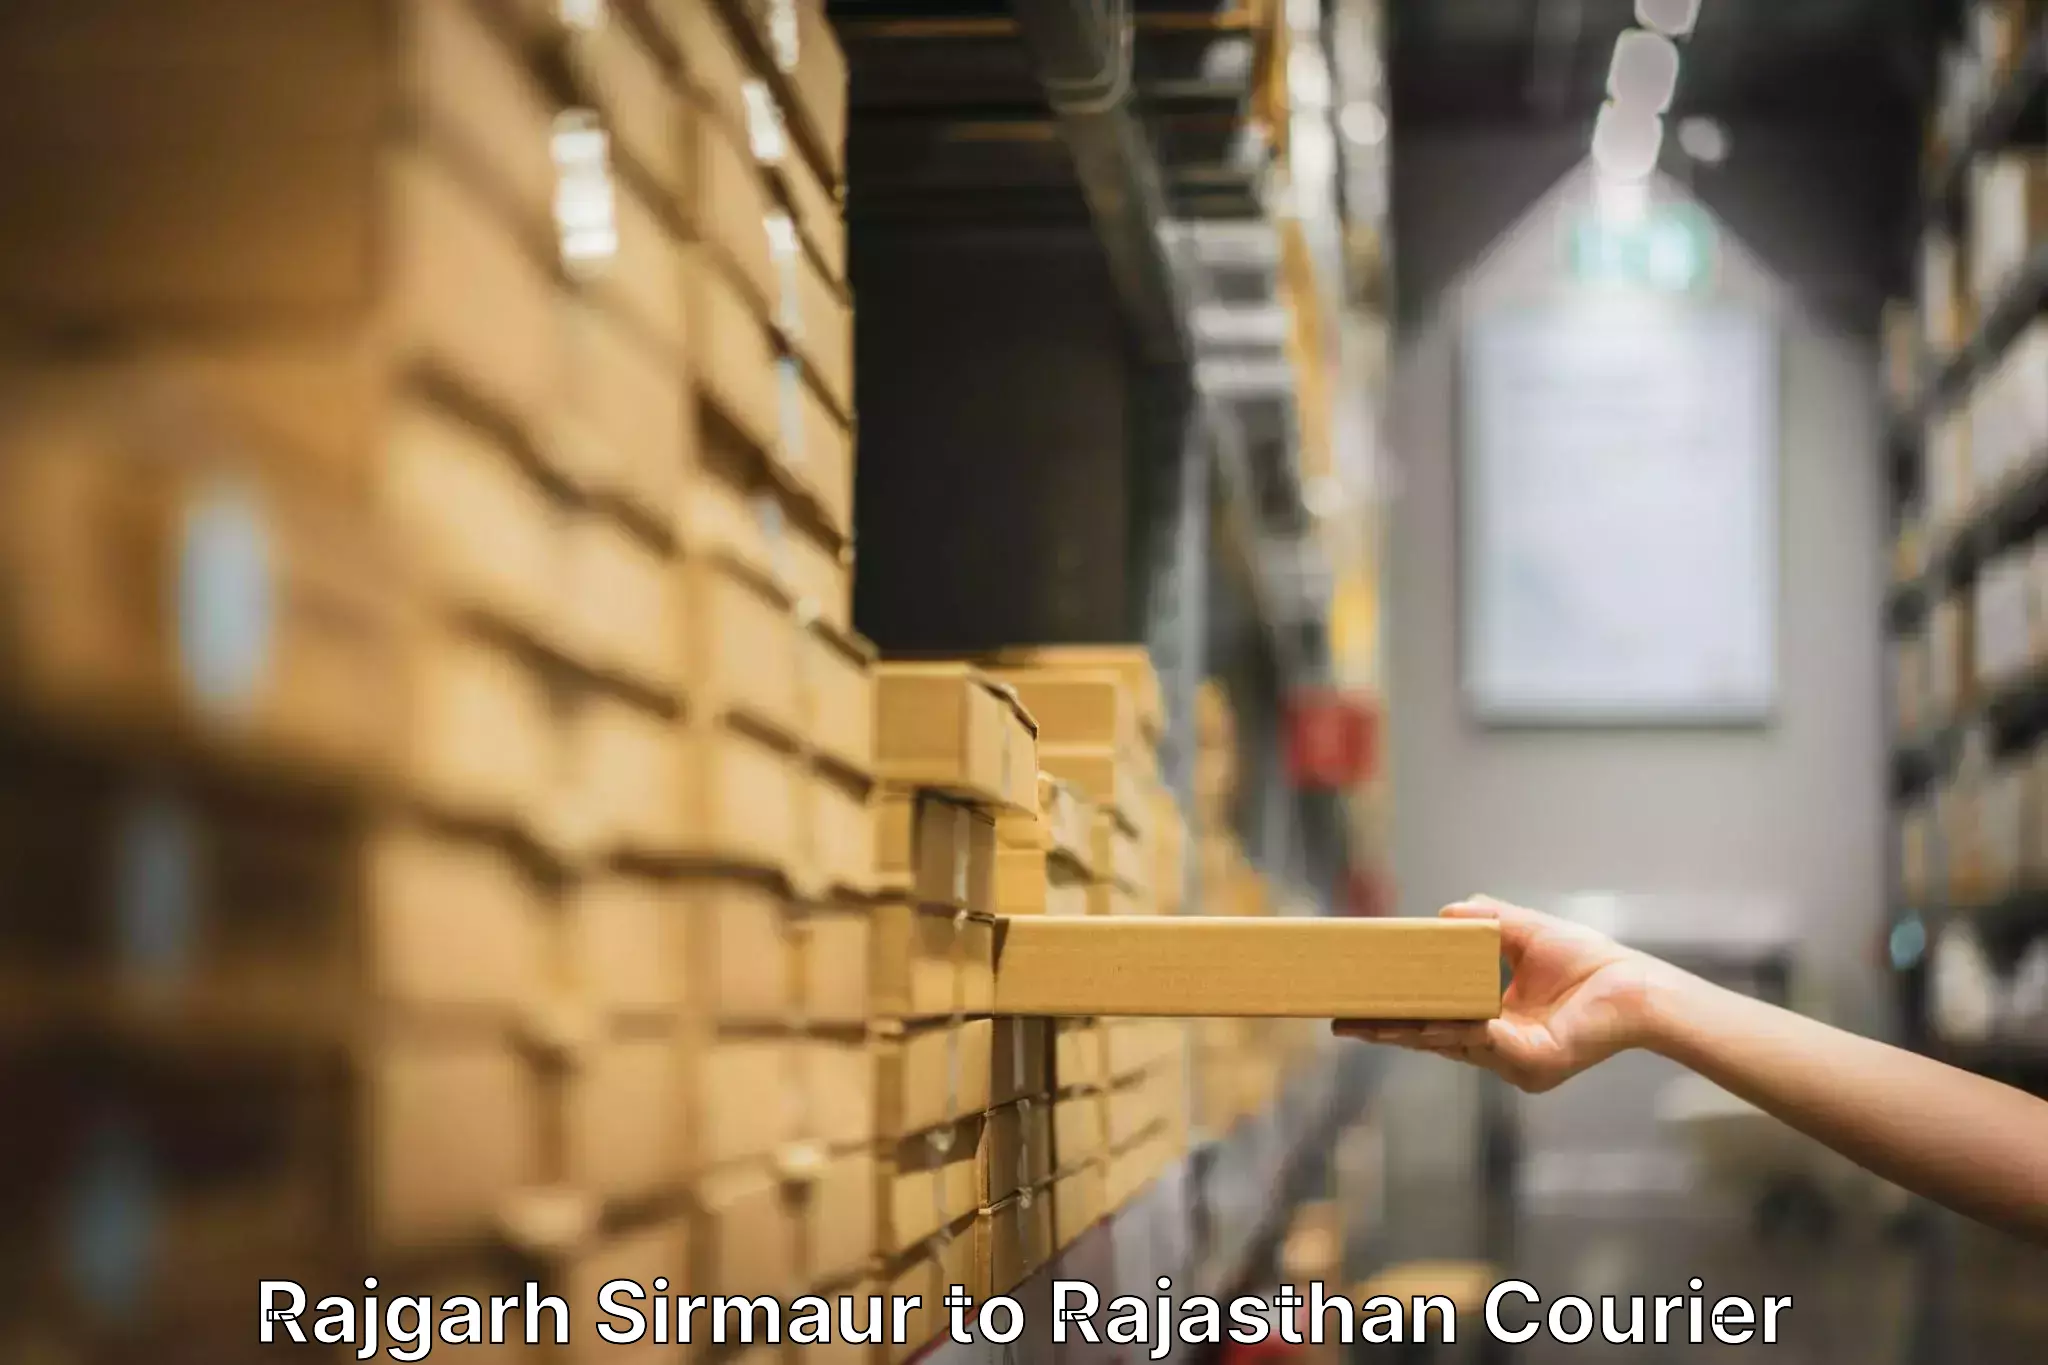 Furniture moving experts Rajgarh Sirmaur to Jaisalmer